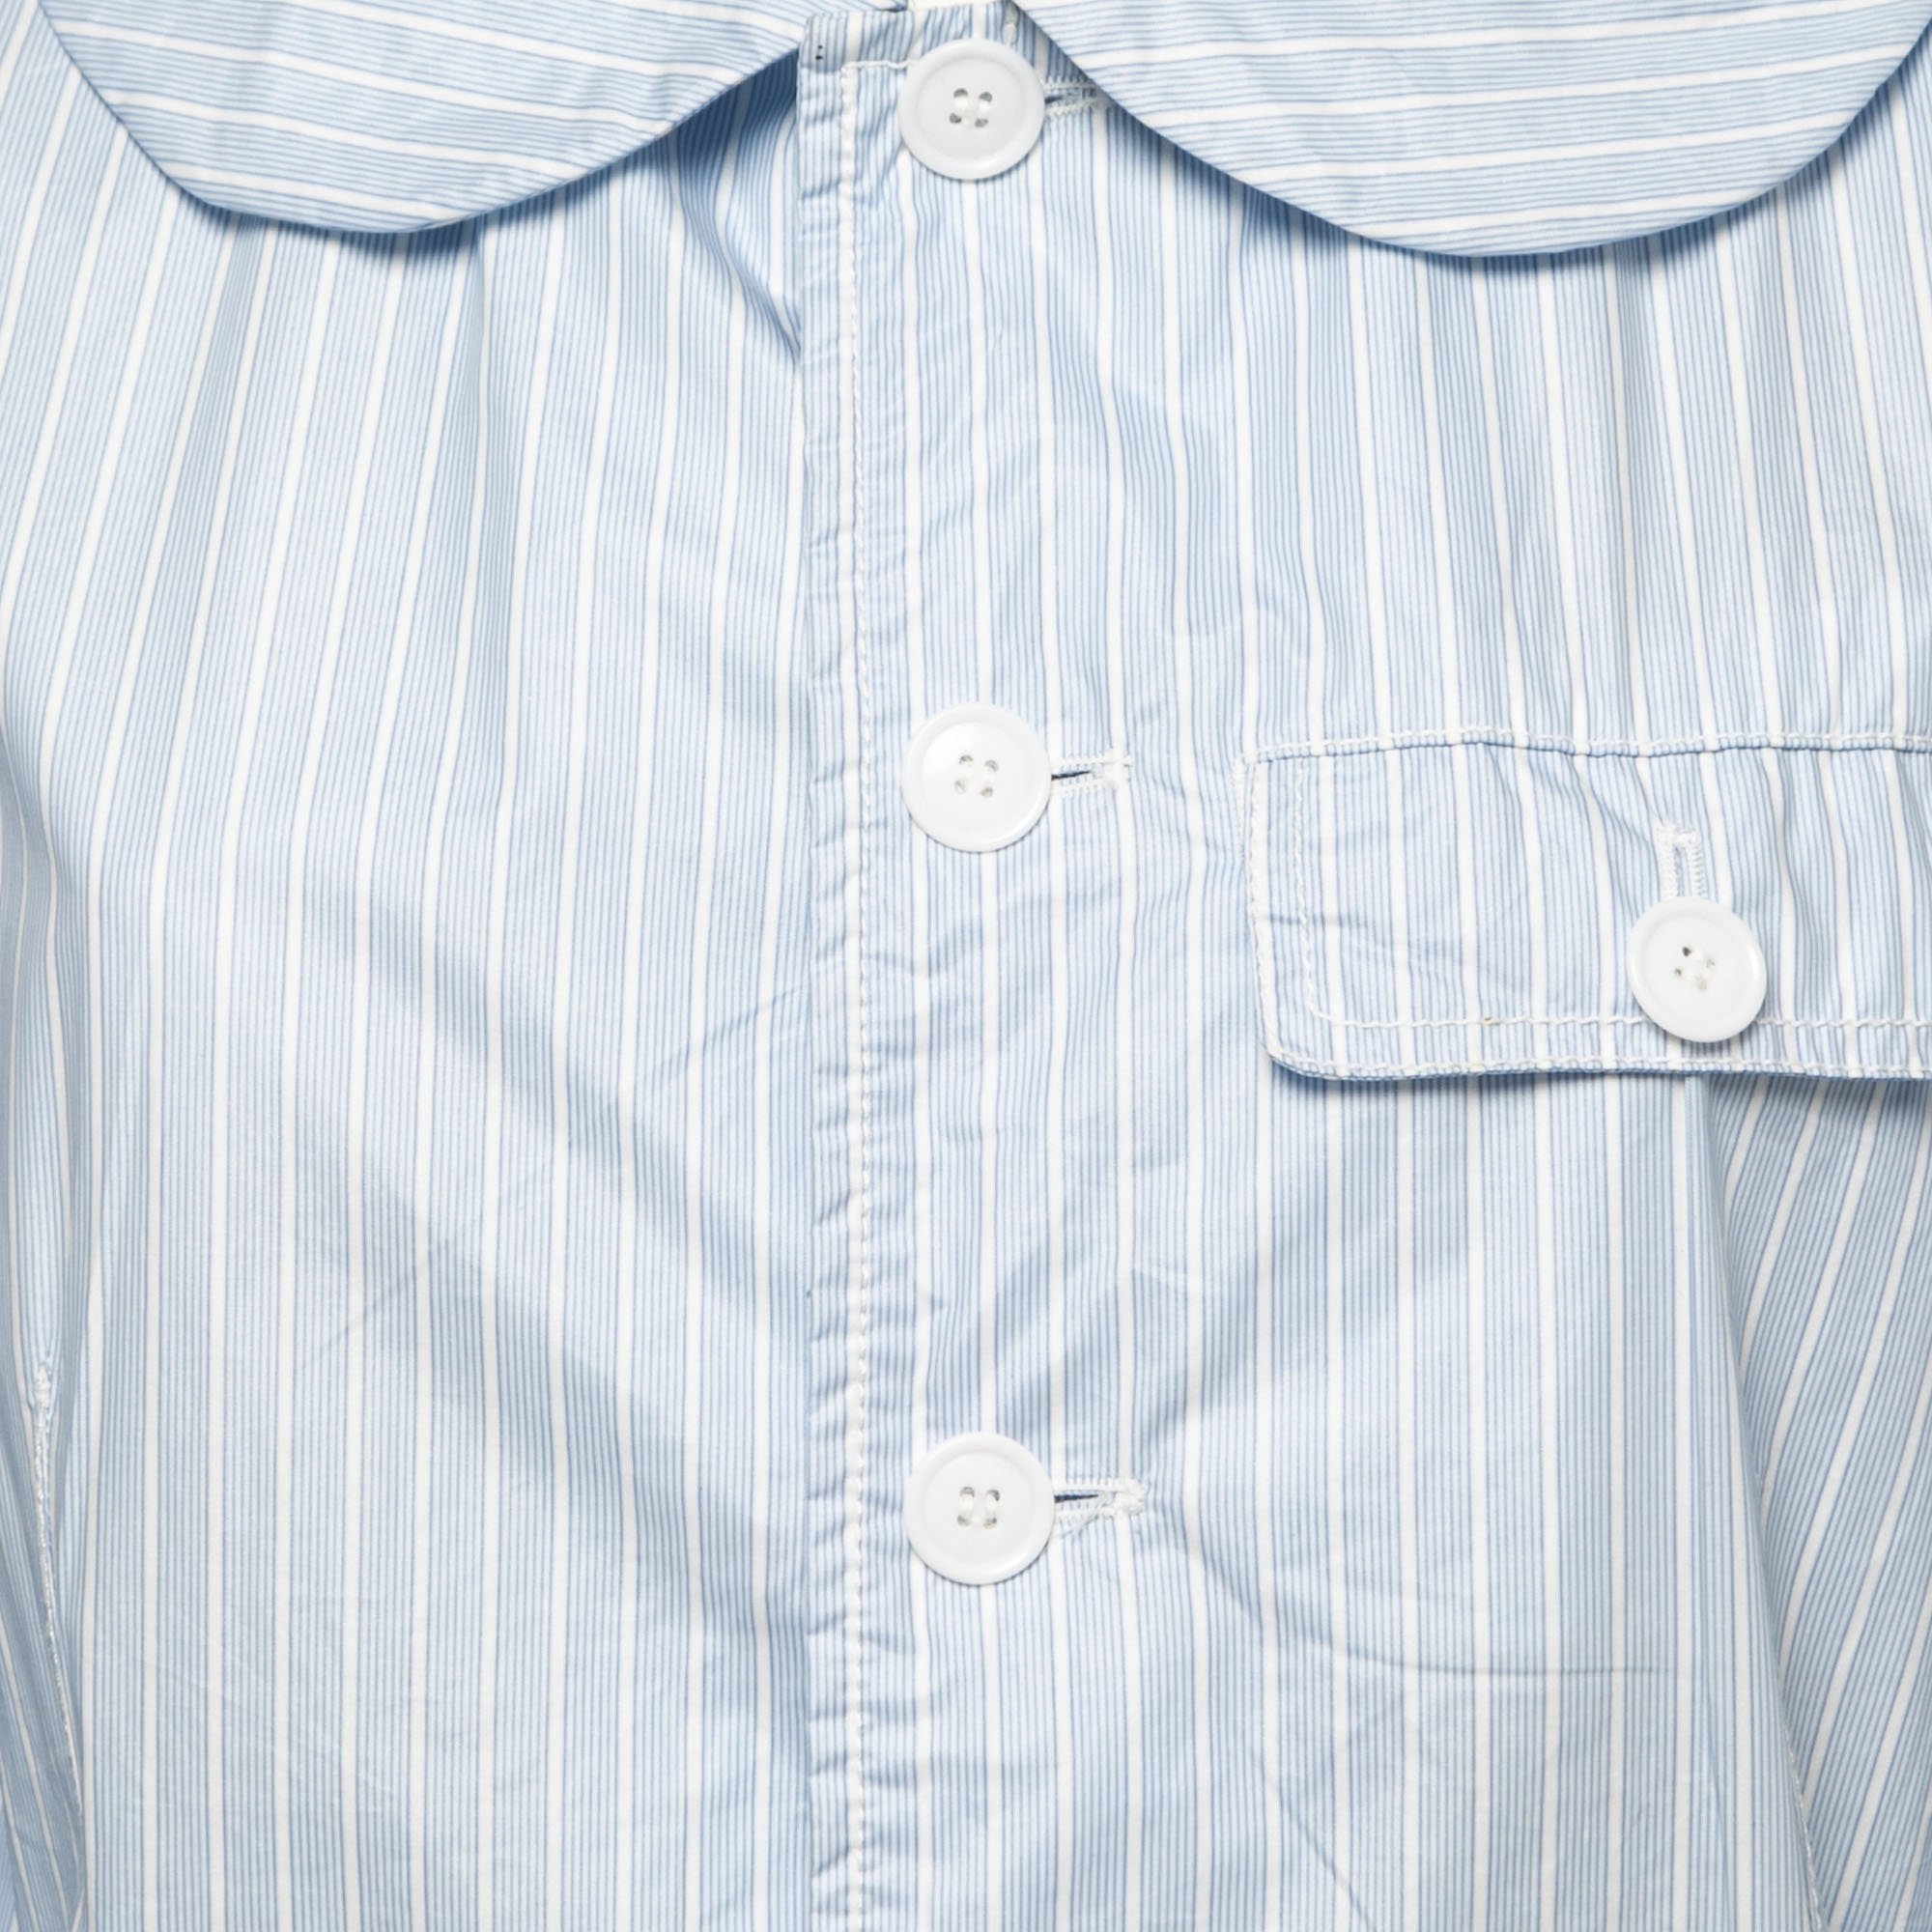 Comme Des Garcons Light Blue Striped Cotton And Acrylic Button Front Shirt L